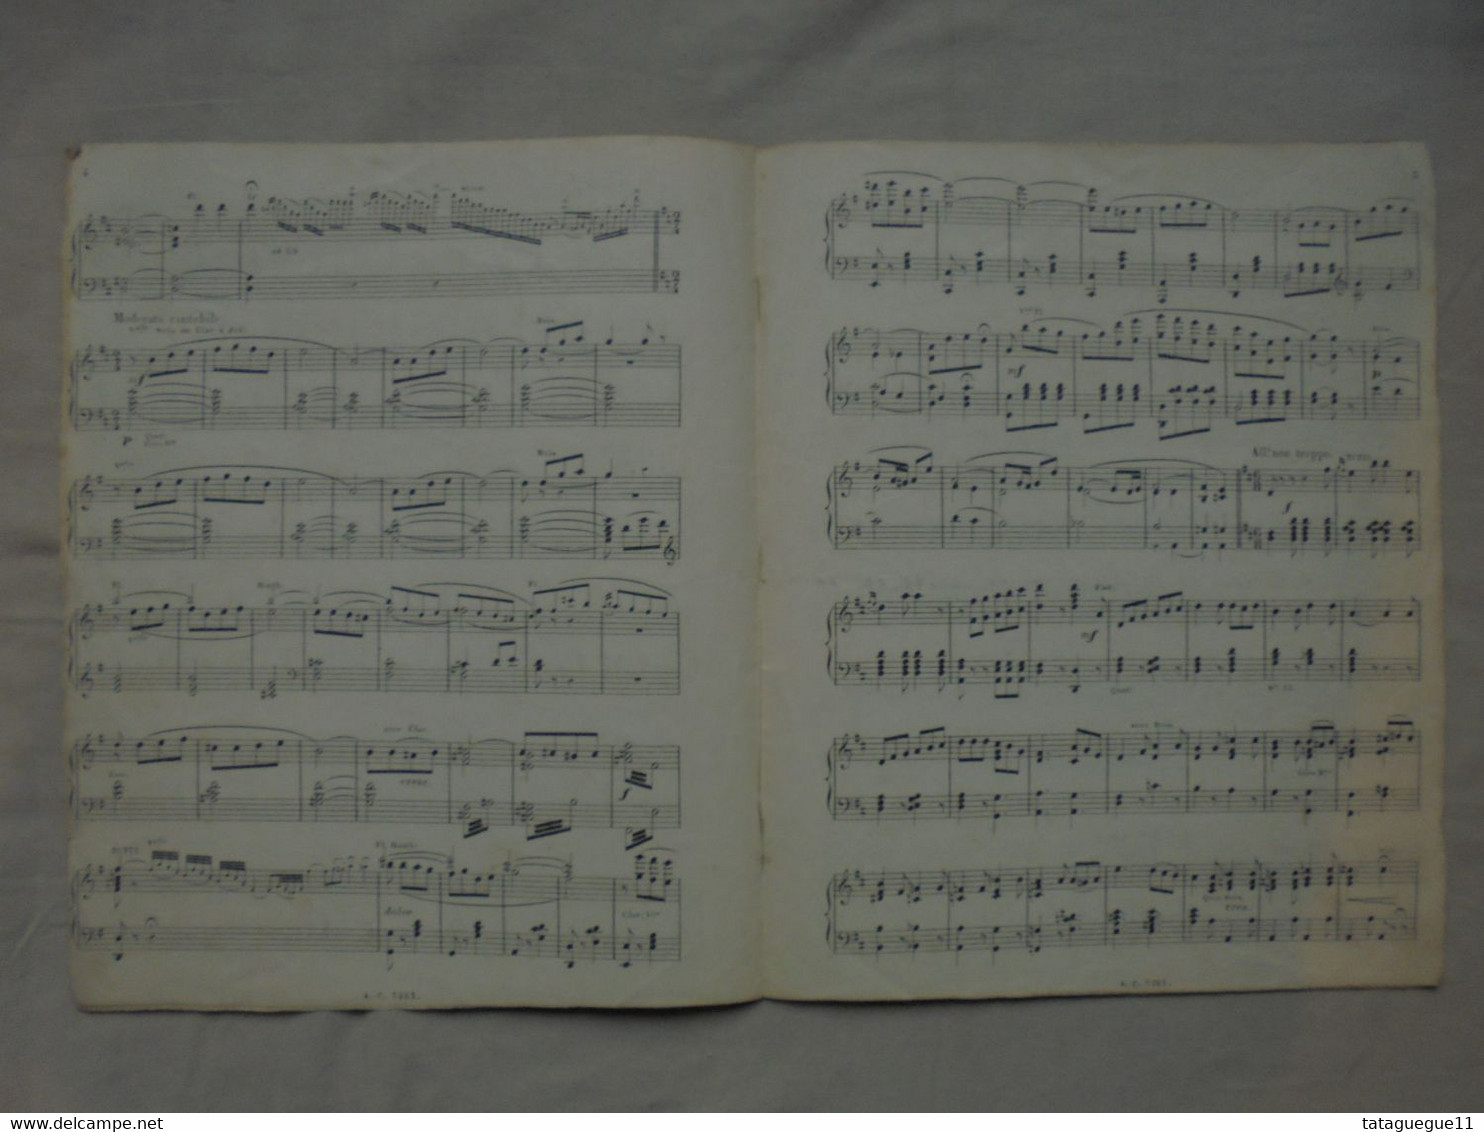 Ancien - Partition Les Mousquetaires Au Couvent Piano Editions Choudens - Instruments à Clavier